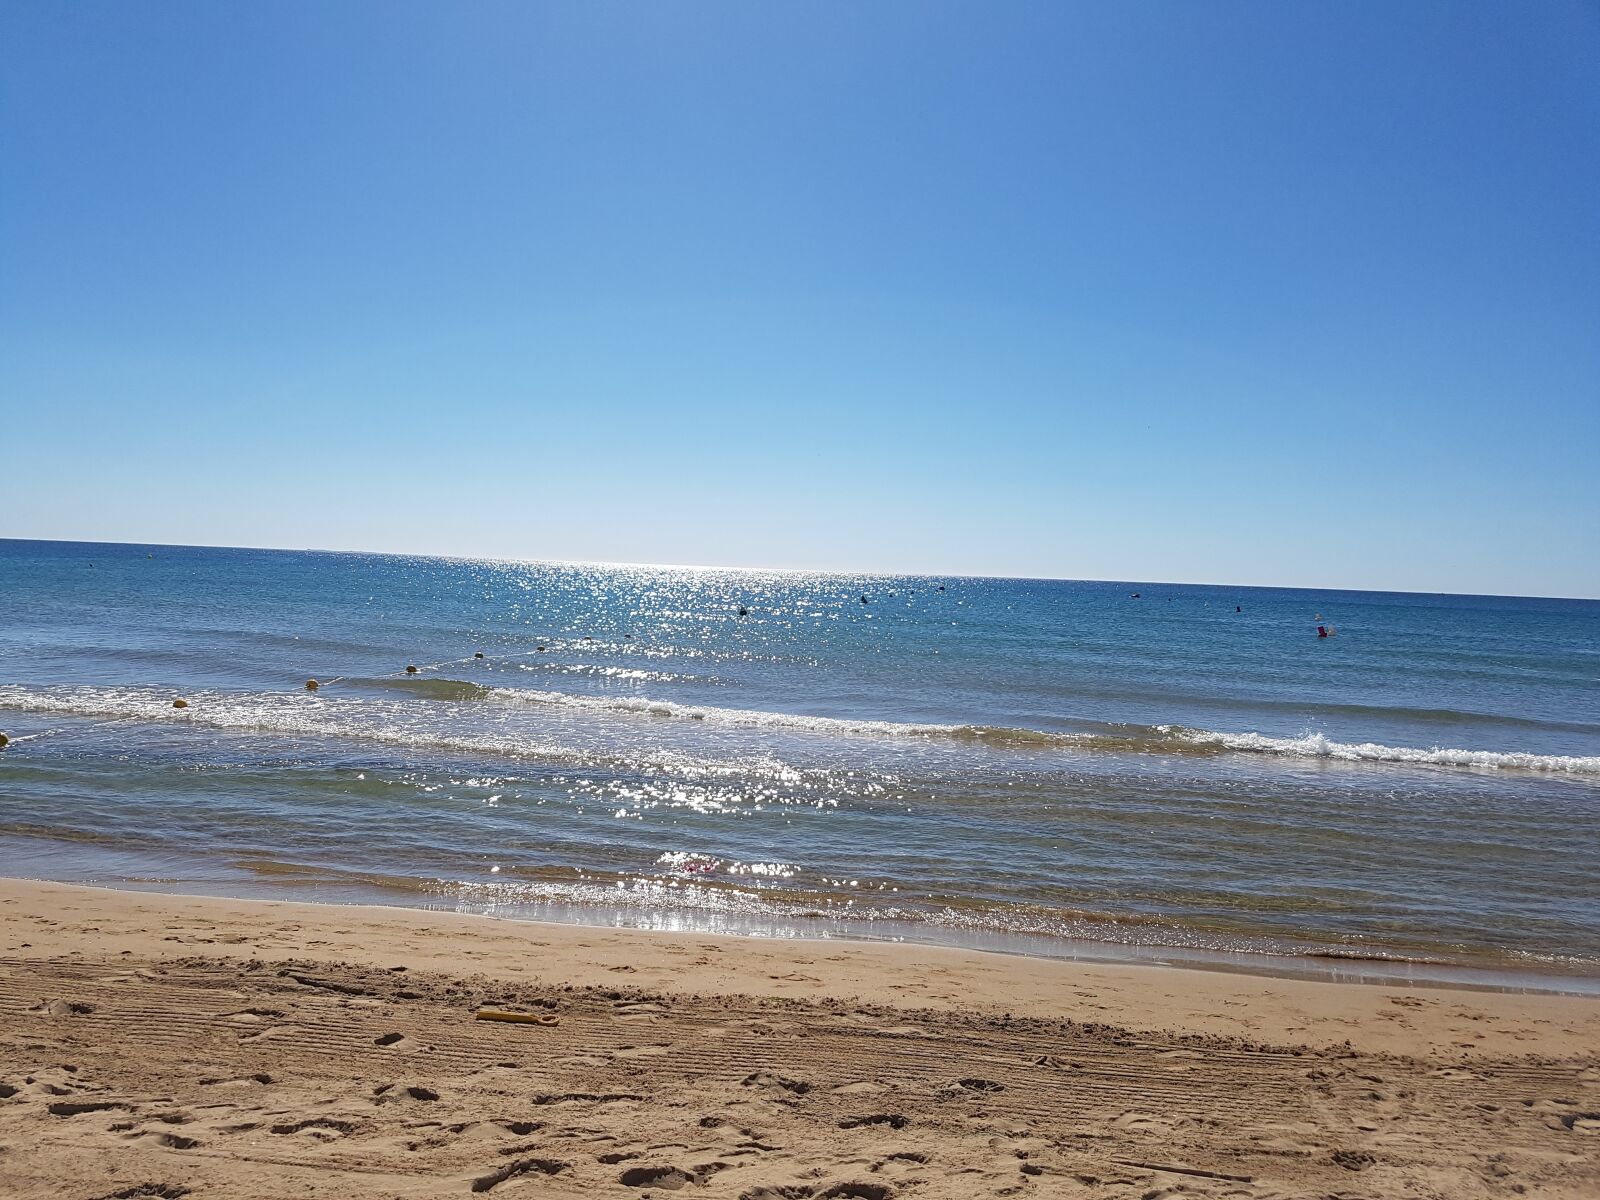 Samsung Galaxy S7 sample photo. Beach, sea, sun photography